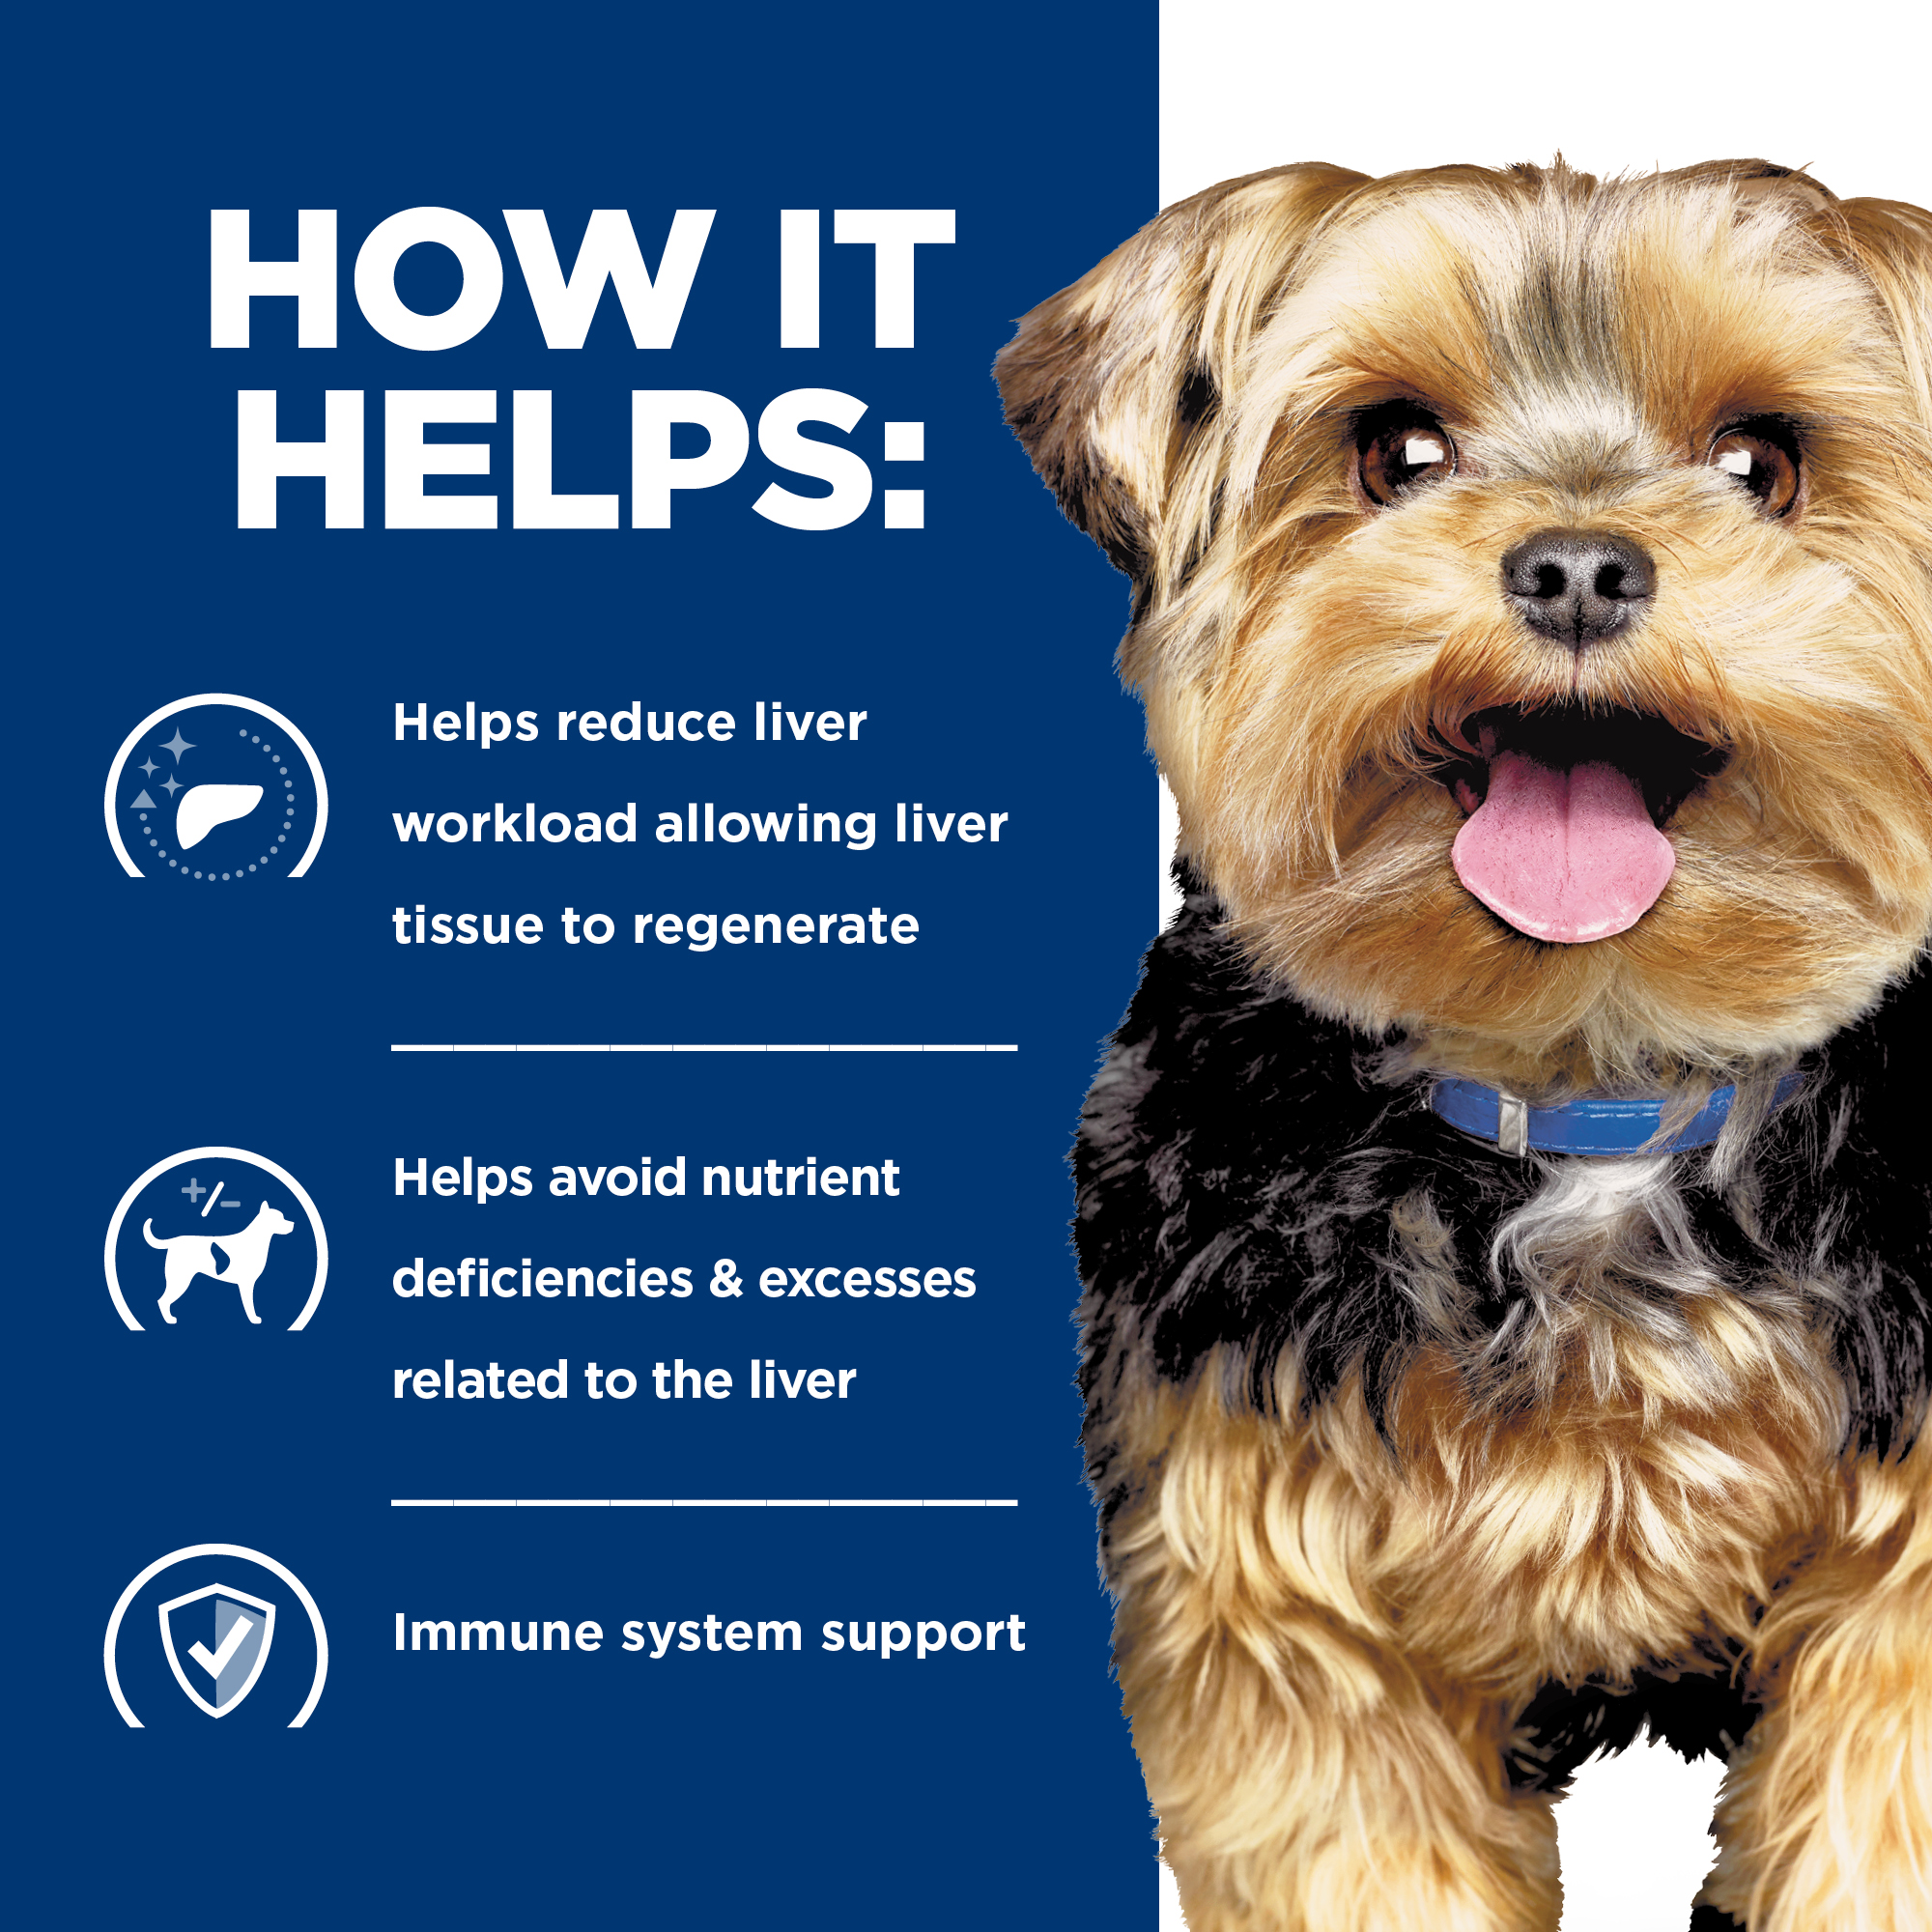 Hill's® Prescription Diet® l/d® Liver Care Canine